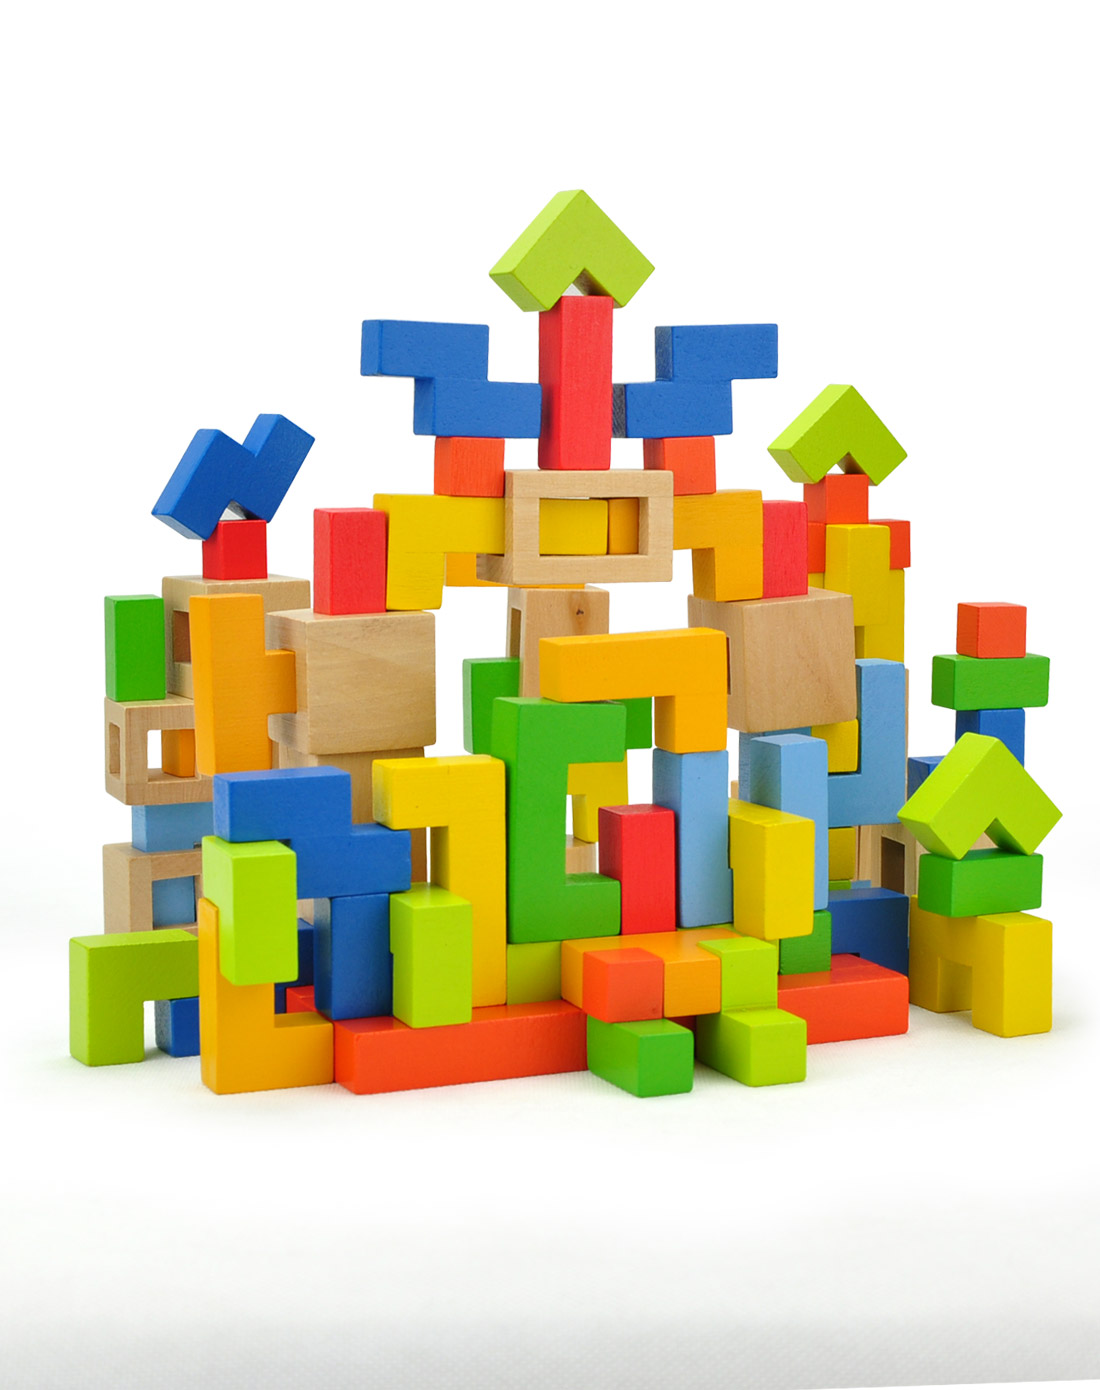 积木玩具俄罗斯方块创意积木